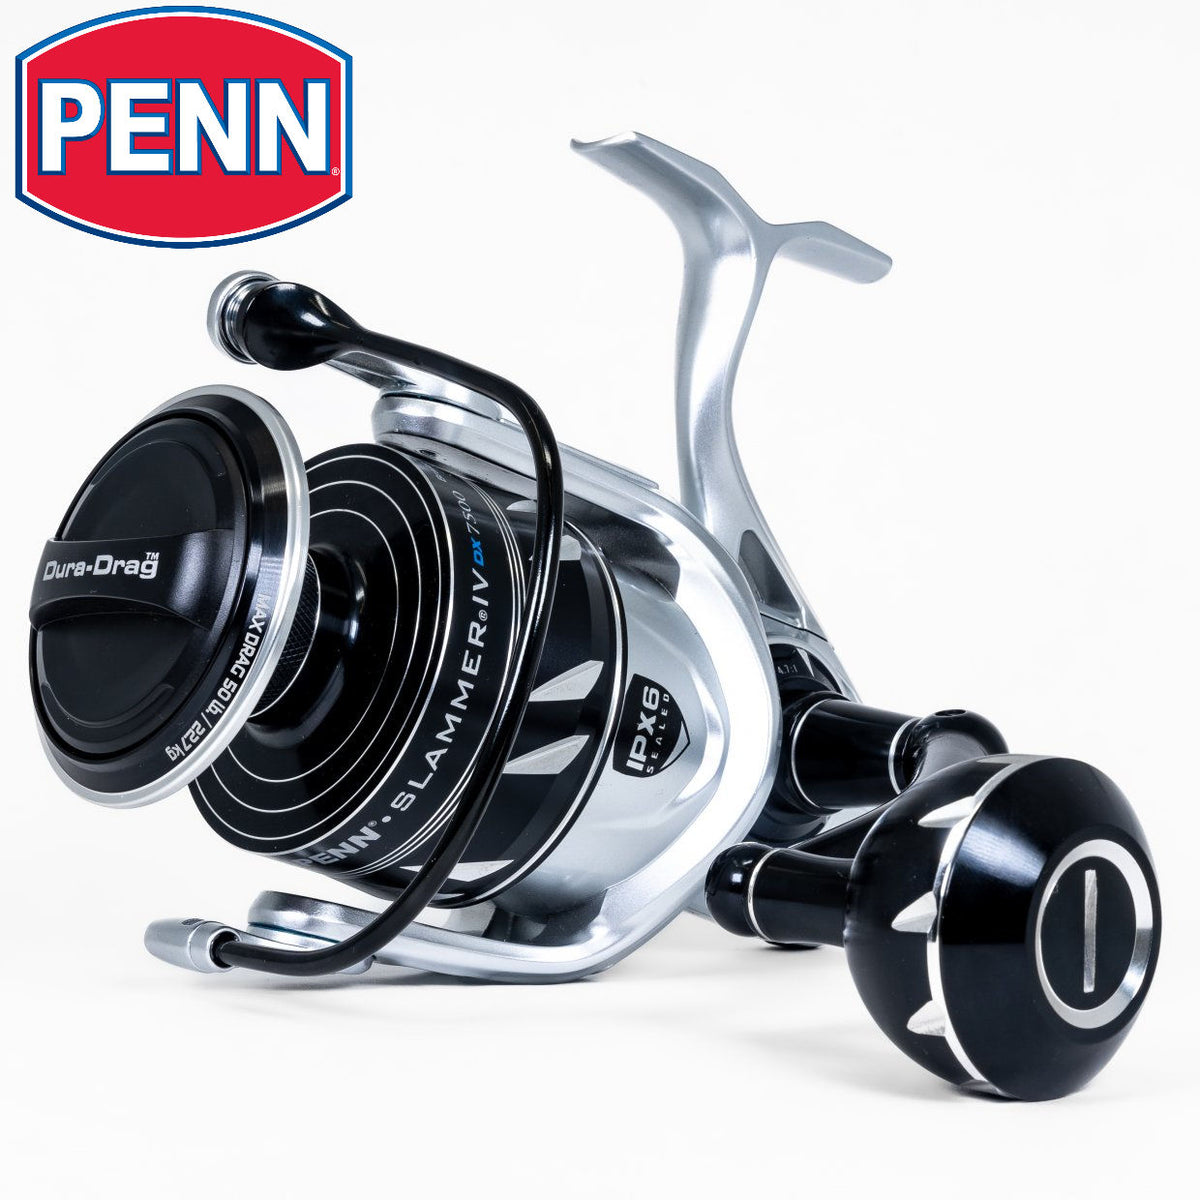 Penn Slammer Fishing Reel, Penn Slammer Vs Battle